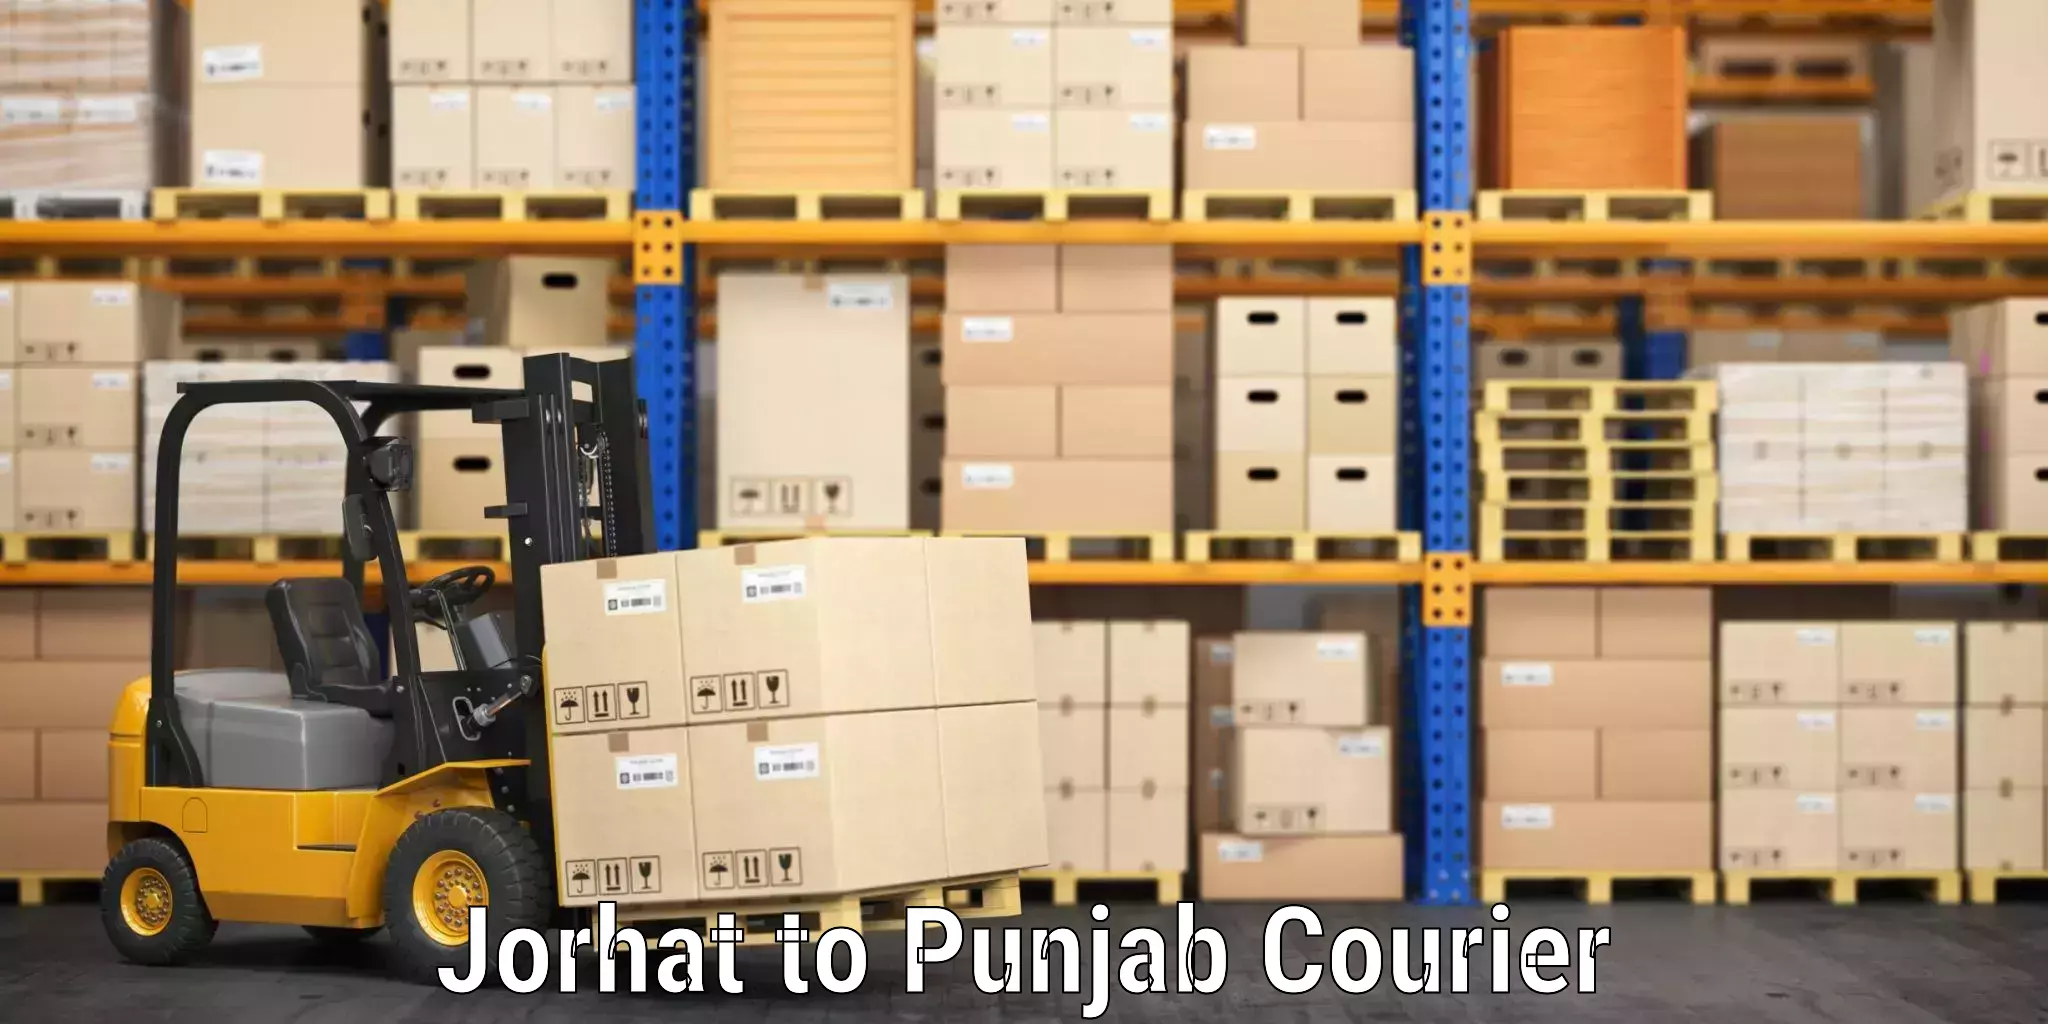 Luggage shipping consultation Jorhat to Central University of Punjab Bathinda